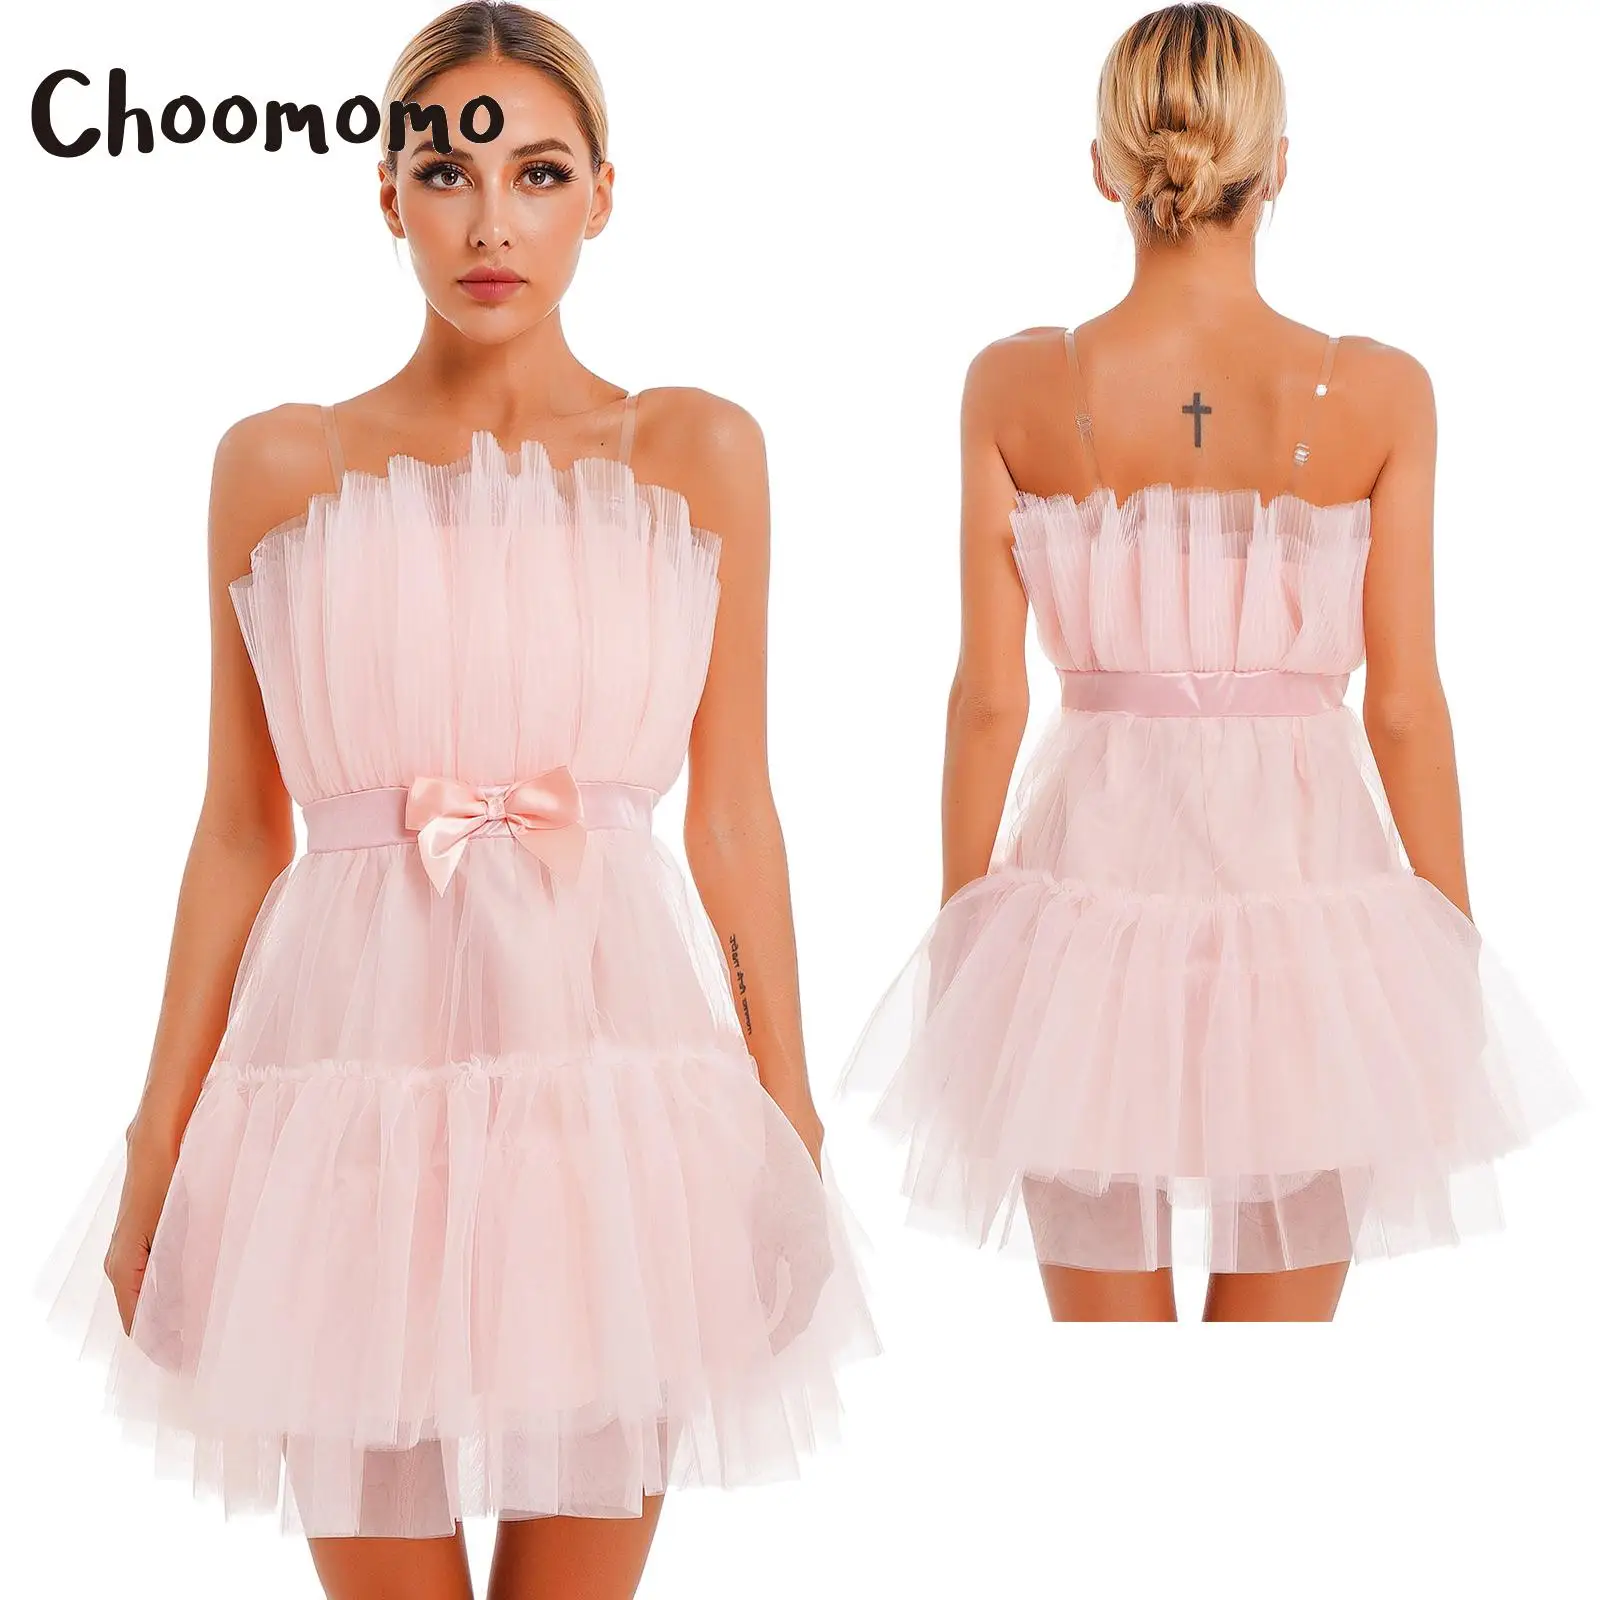 Choomomo Bayan Saf Straplez Prenses Kısa Elbiseler Çok Katmanlı Örgü Yüksek Bel Hattı Parti Elbise İlmek ile Doğum Günü için . ' - ' . 0